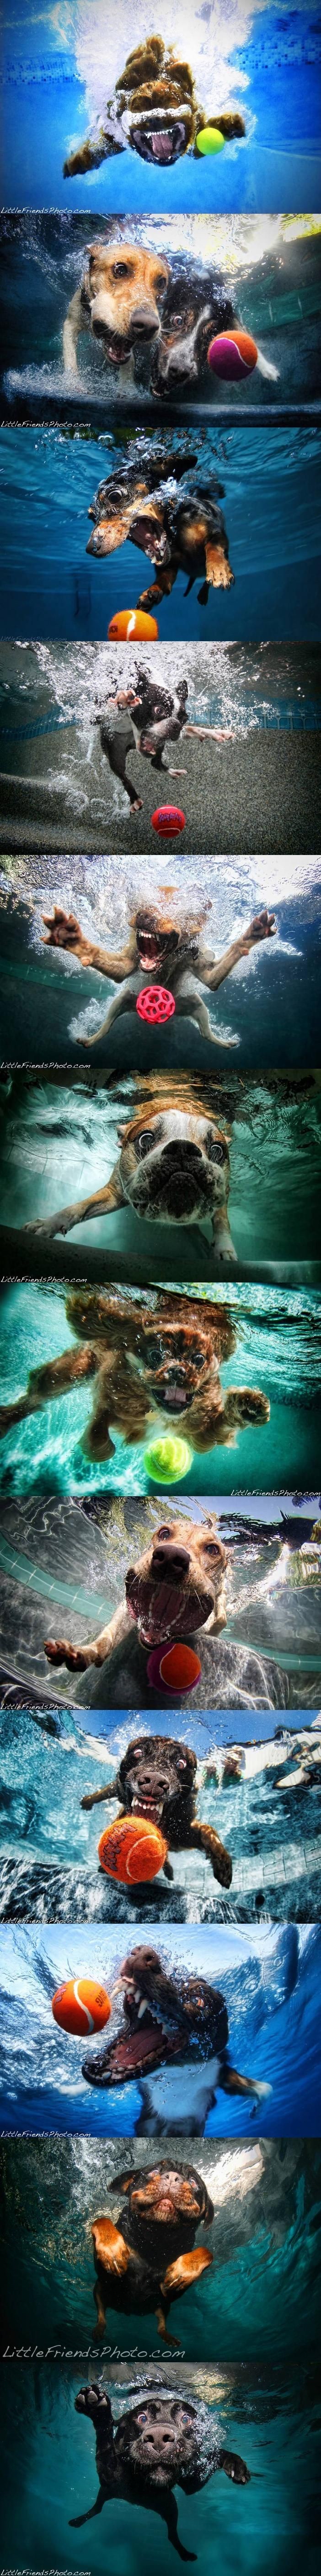 Dogs under water.Ball… ball… ball!!! T...